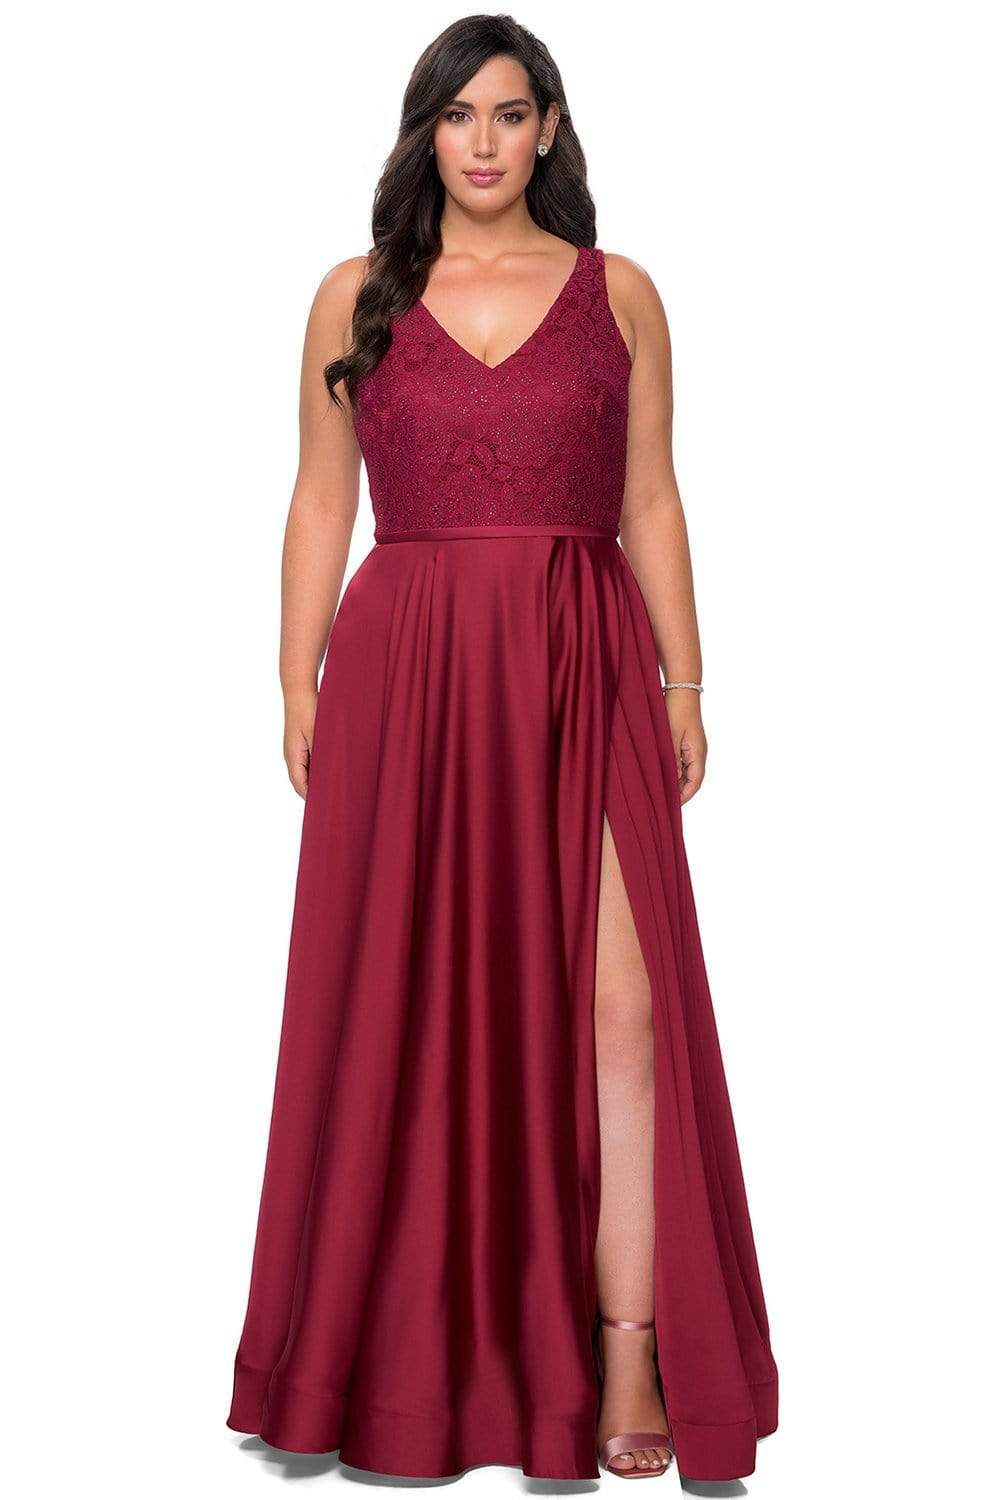 La Femme - 29004 Lace High Slit Plus Size Prom Gown
